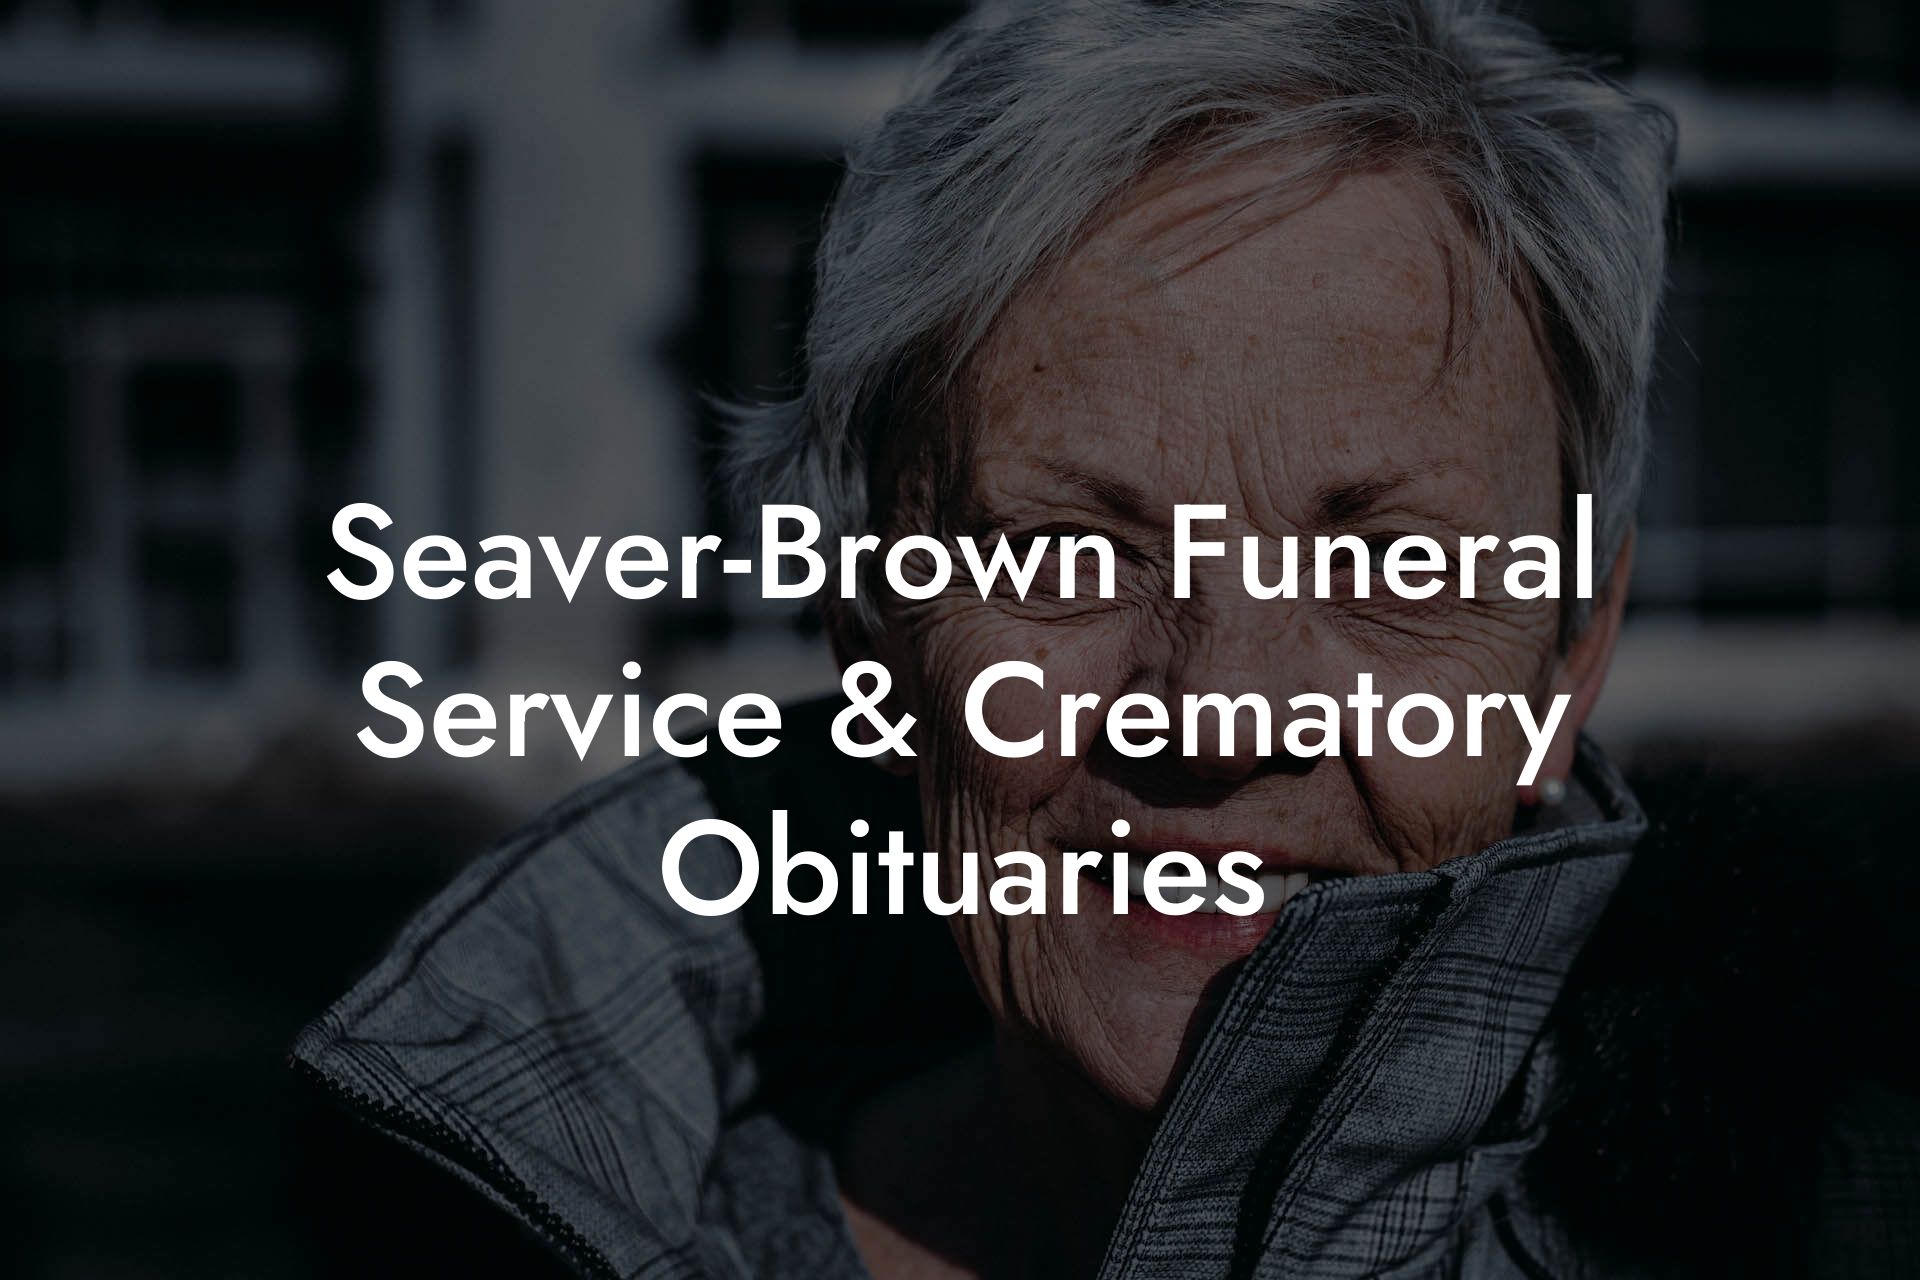 Seaver-Brown Funeral Service & Crematory Obituaries